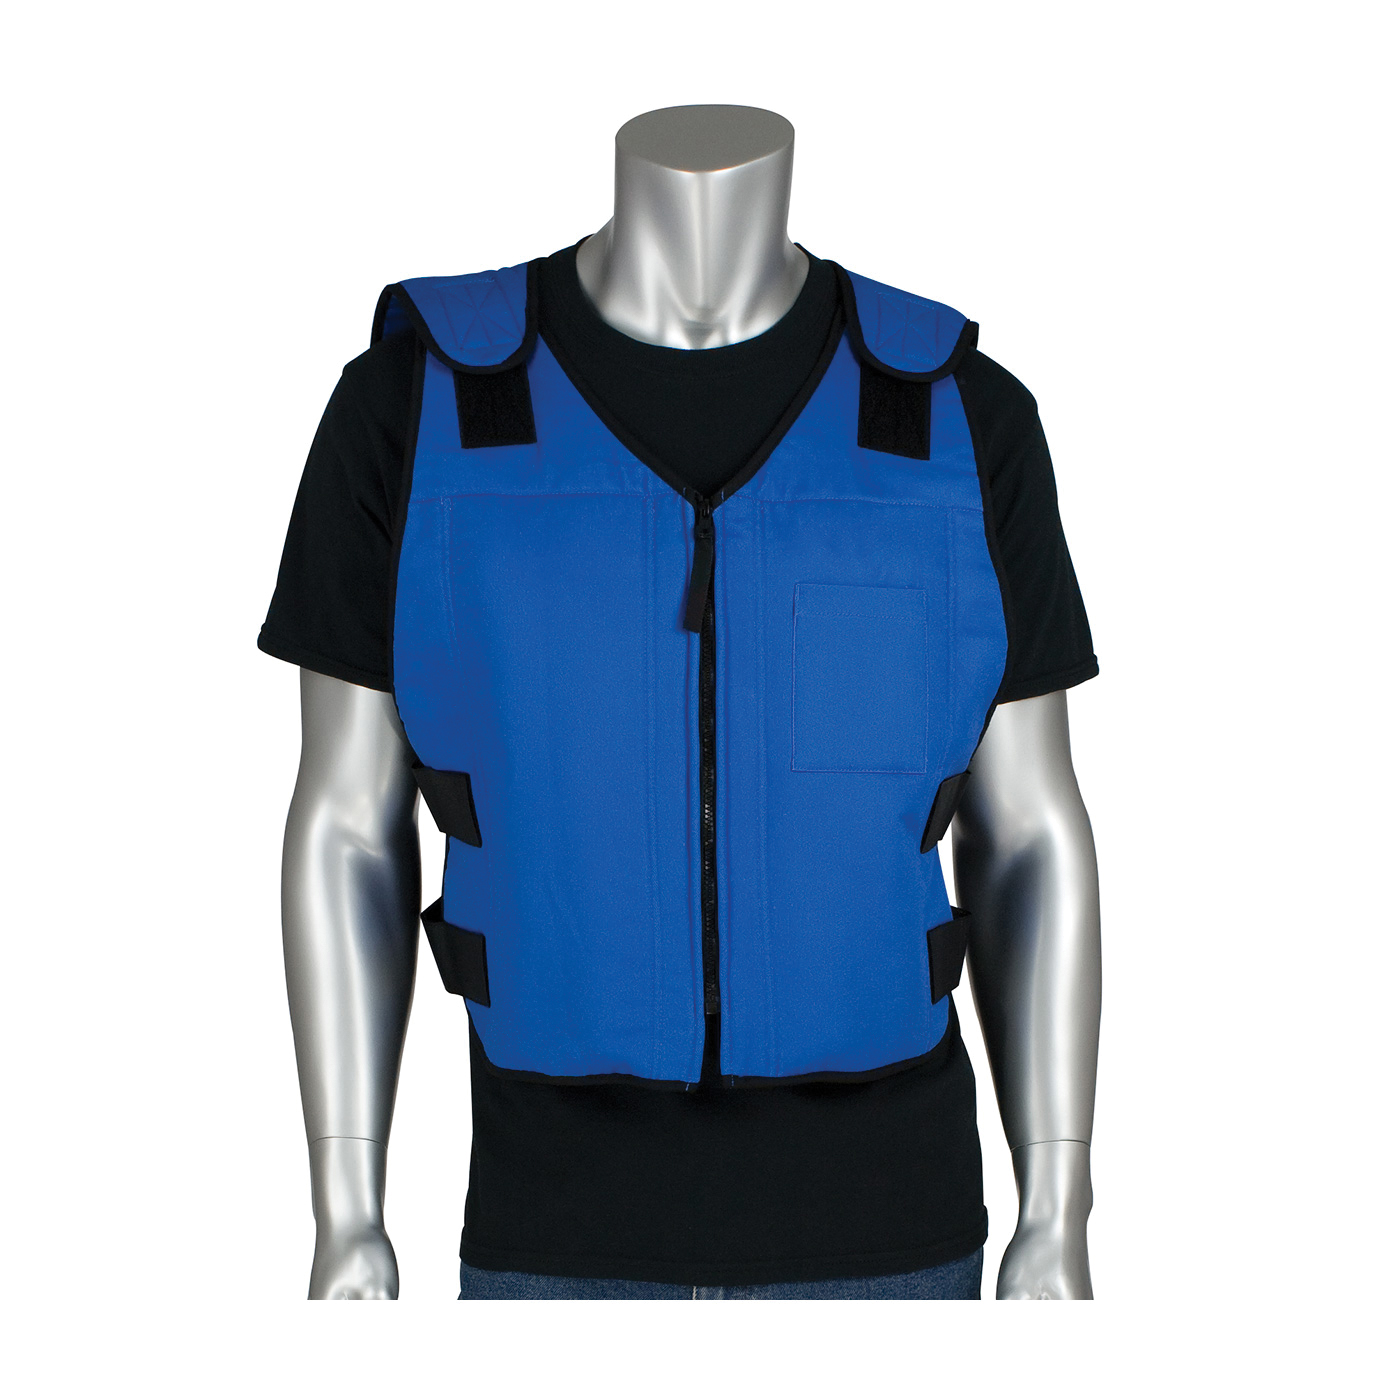 PIP® 390-EZSPC-M/L EZ-Cool® Active Fit Premium Phase Change Cooling Vest With Insulated Cooler Bag, M/L Size, Zipper Closure, Cotton/Nylon, Blue